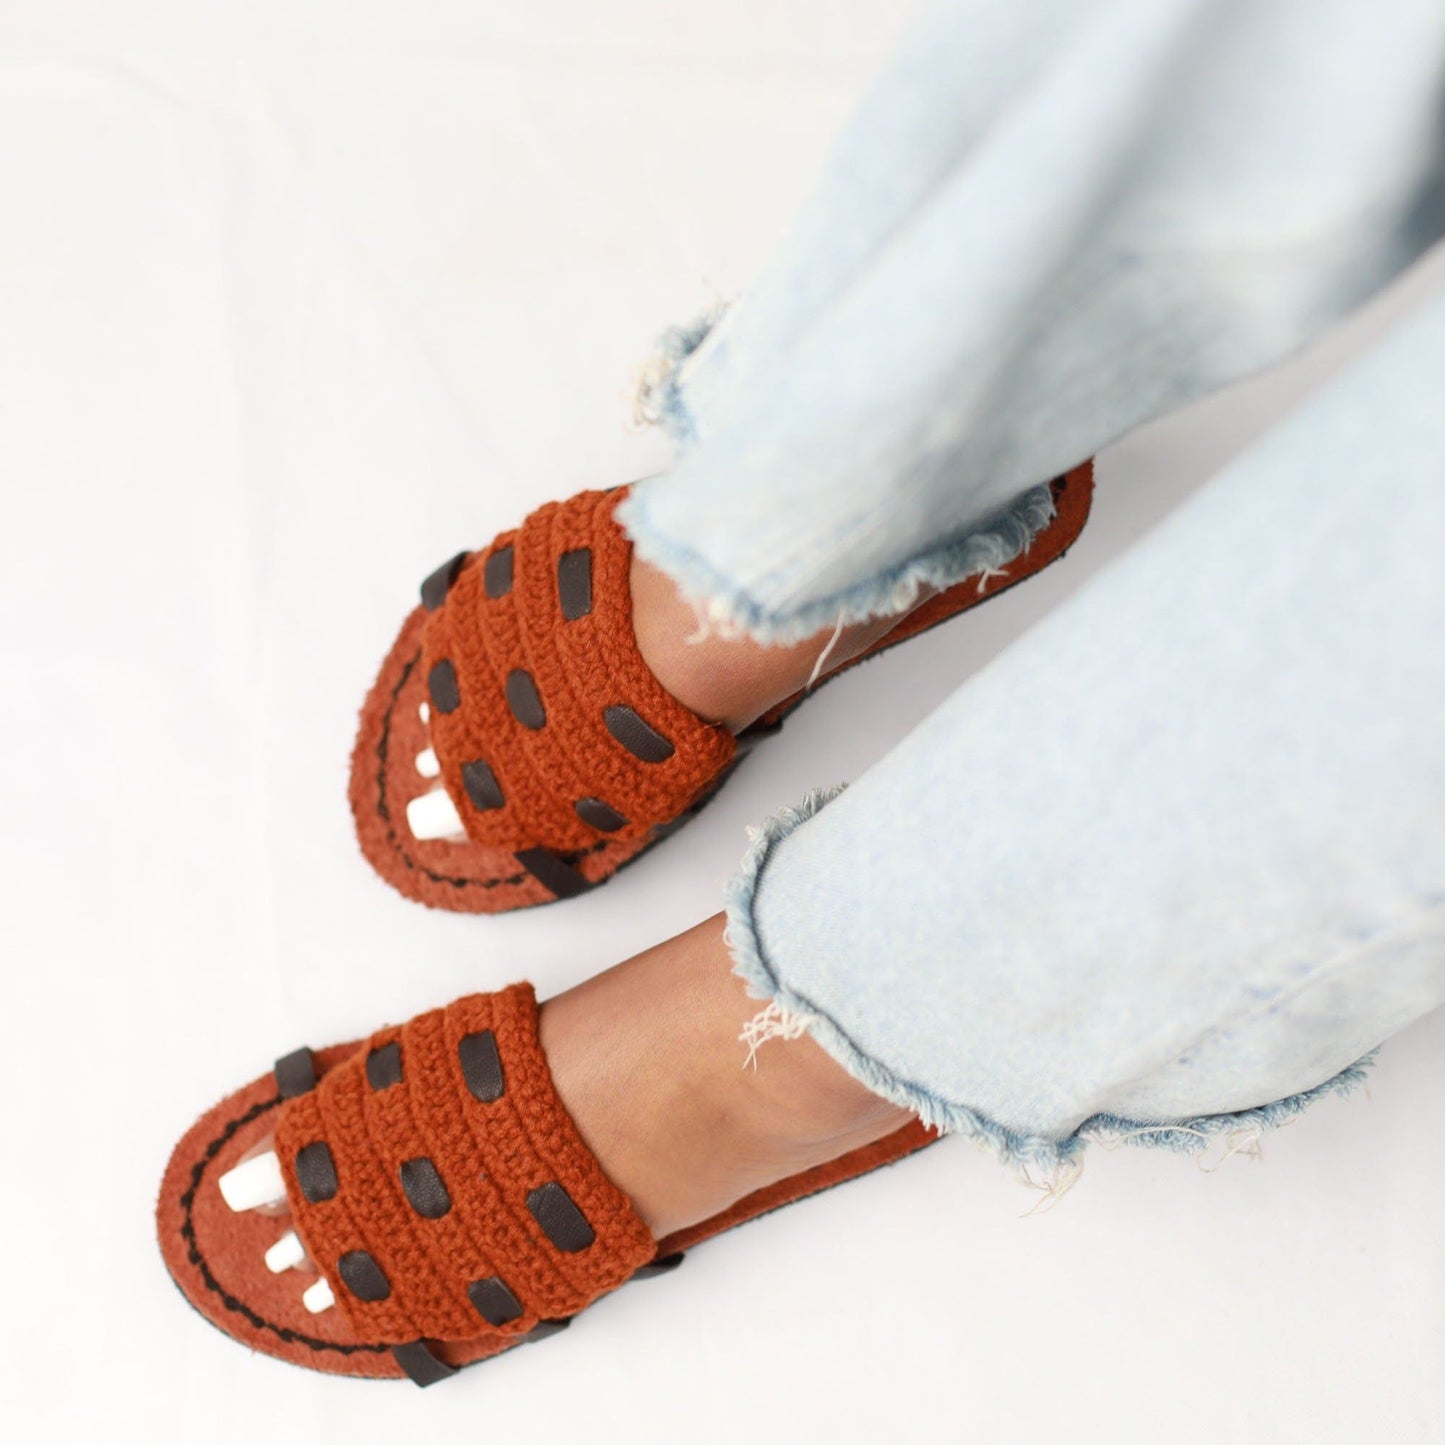 Satera - Ethiopian sandals